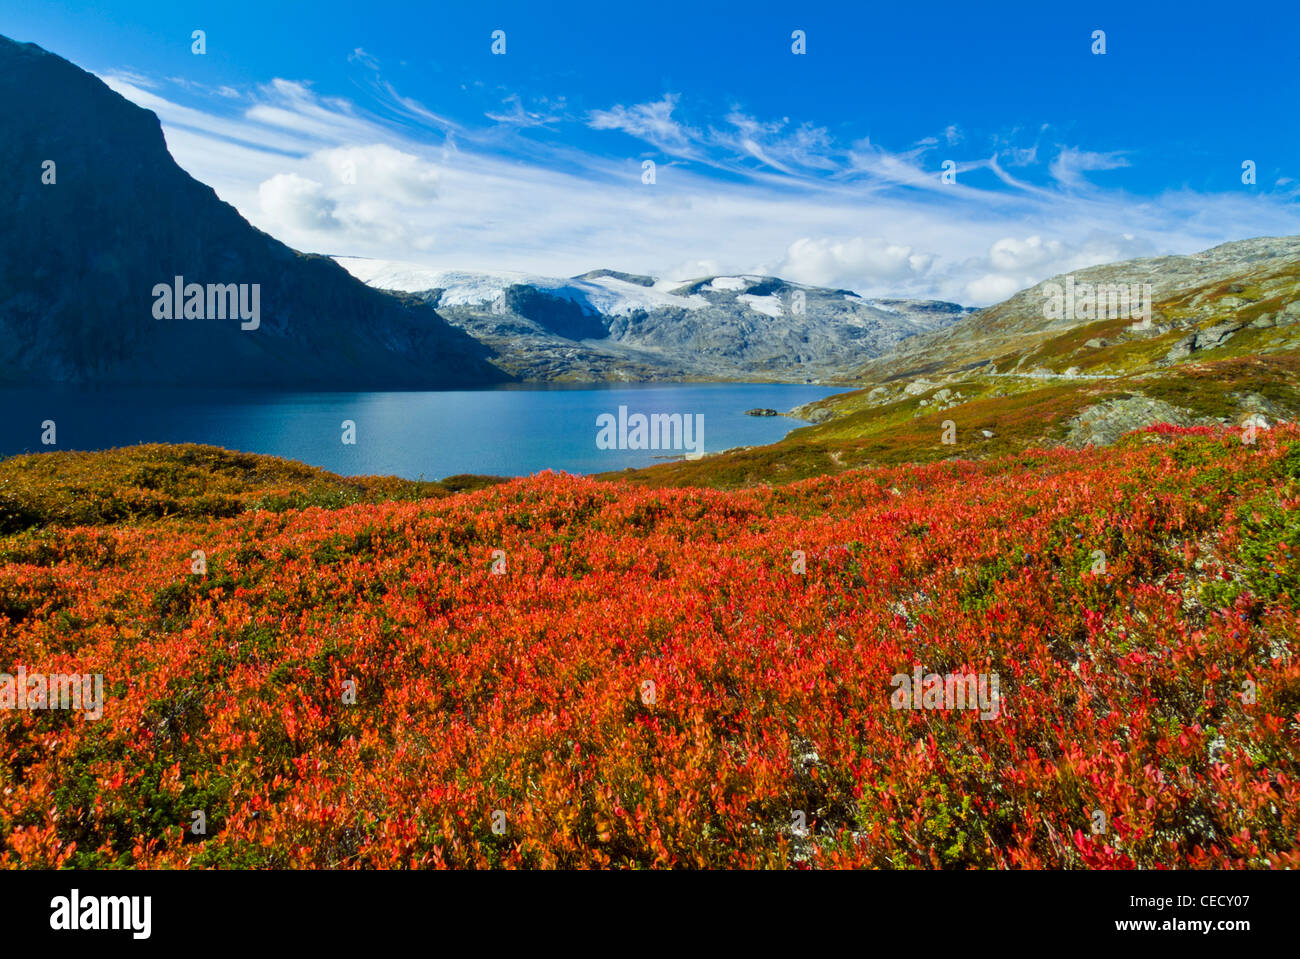 Lac avec Djupvatnet lichen rouge tout autour du plateau Dalsnibba More og Romsdal Norvège eu Europe Banque D'Images